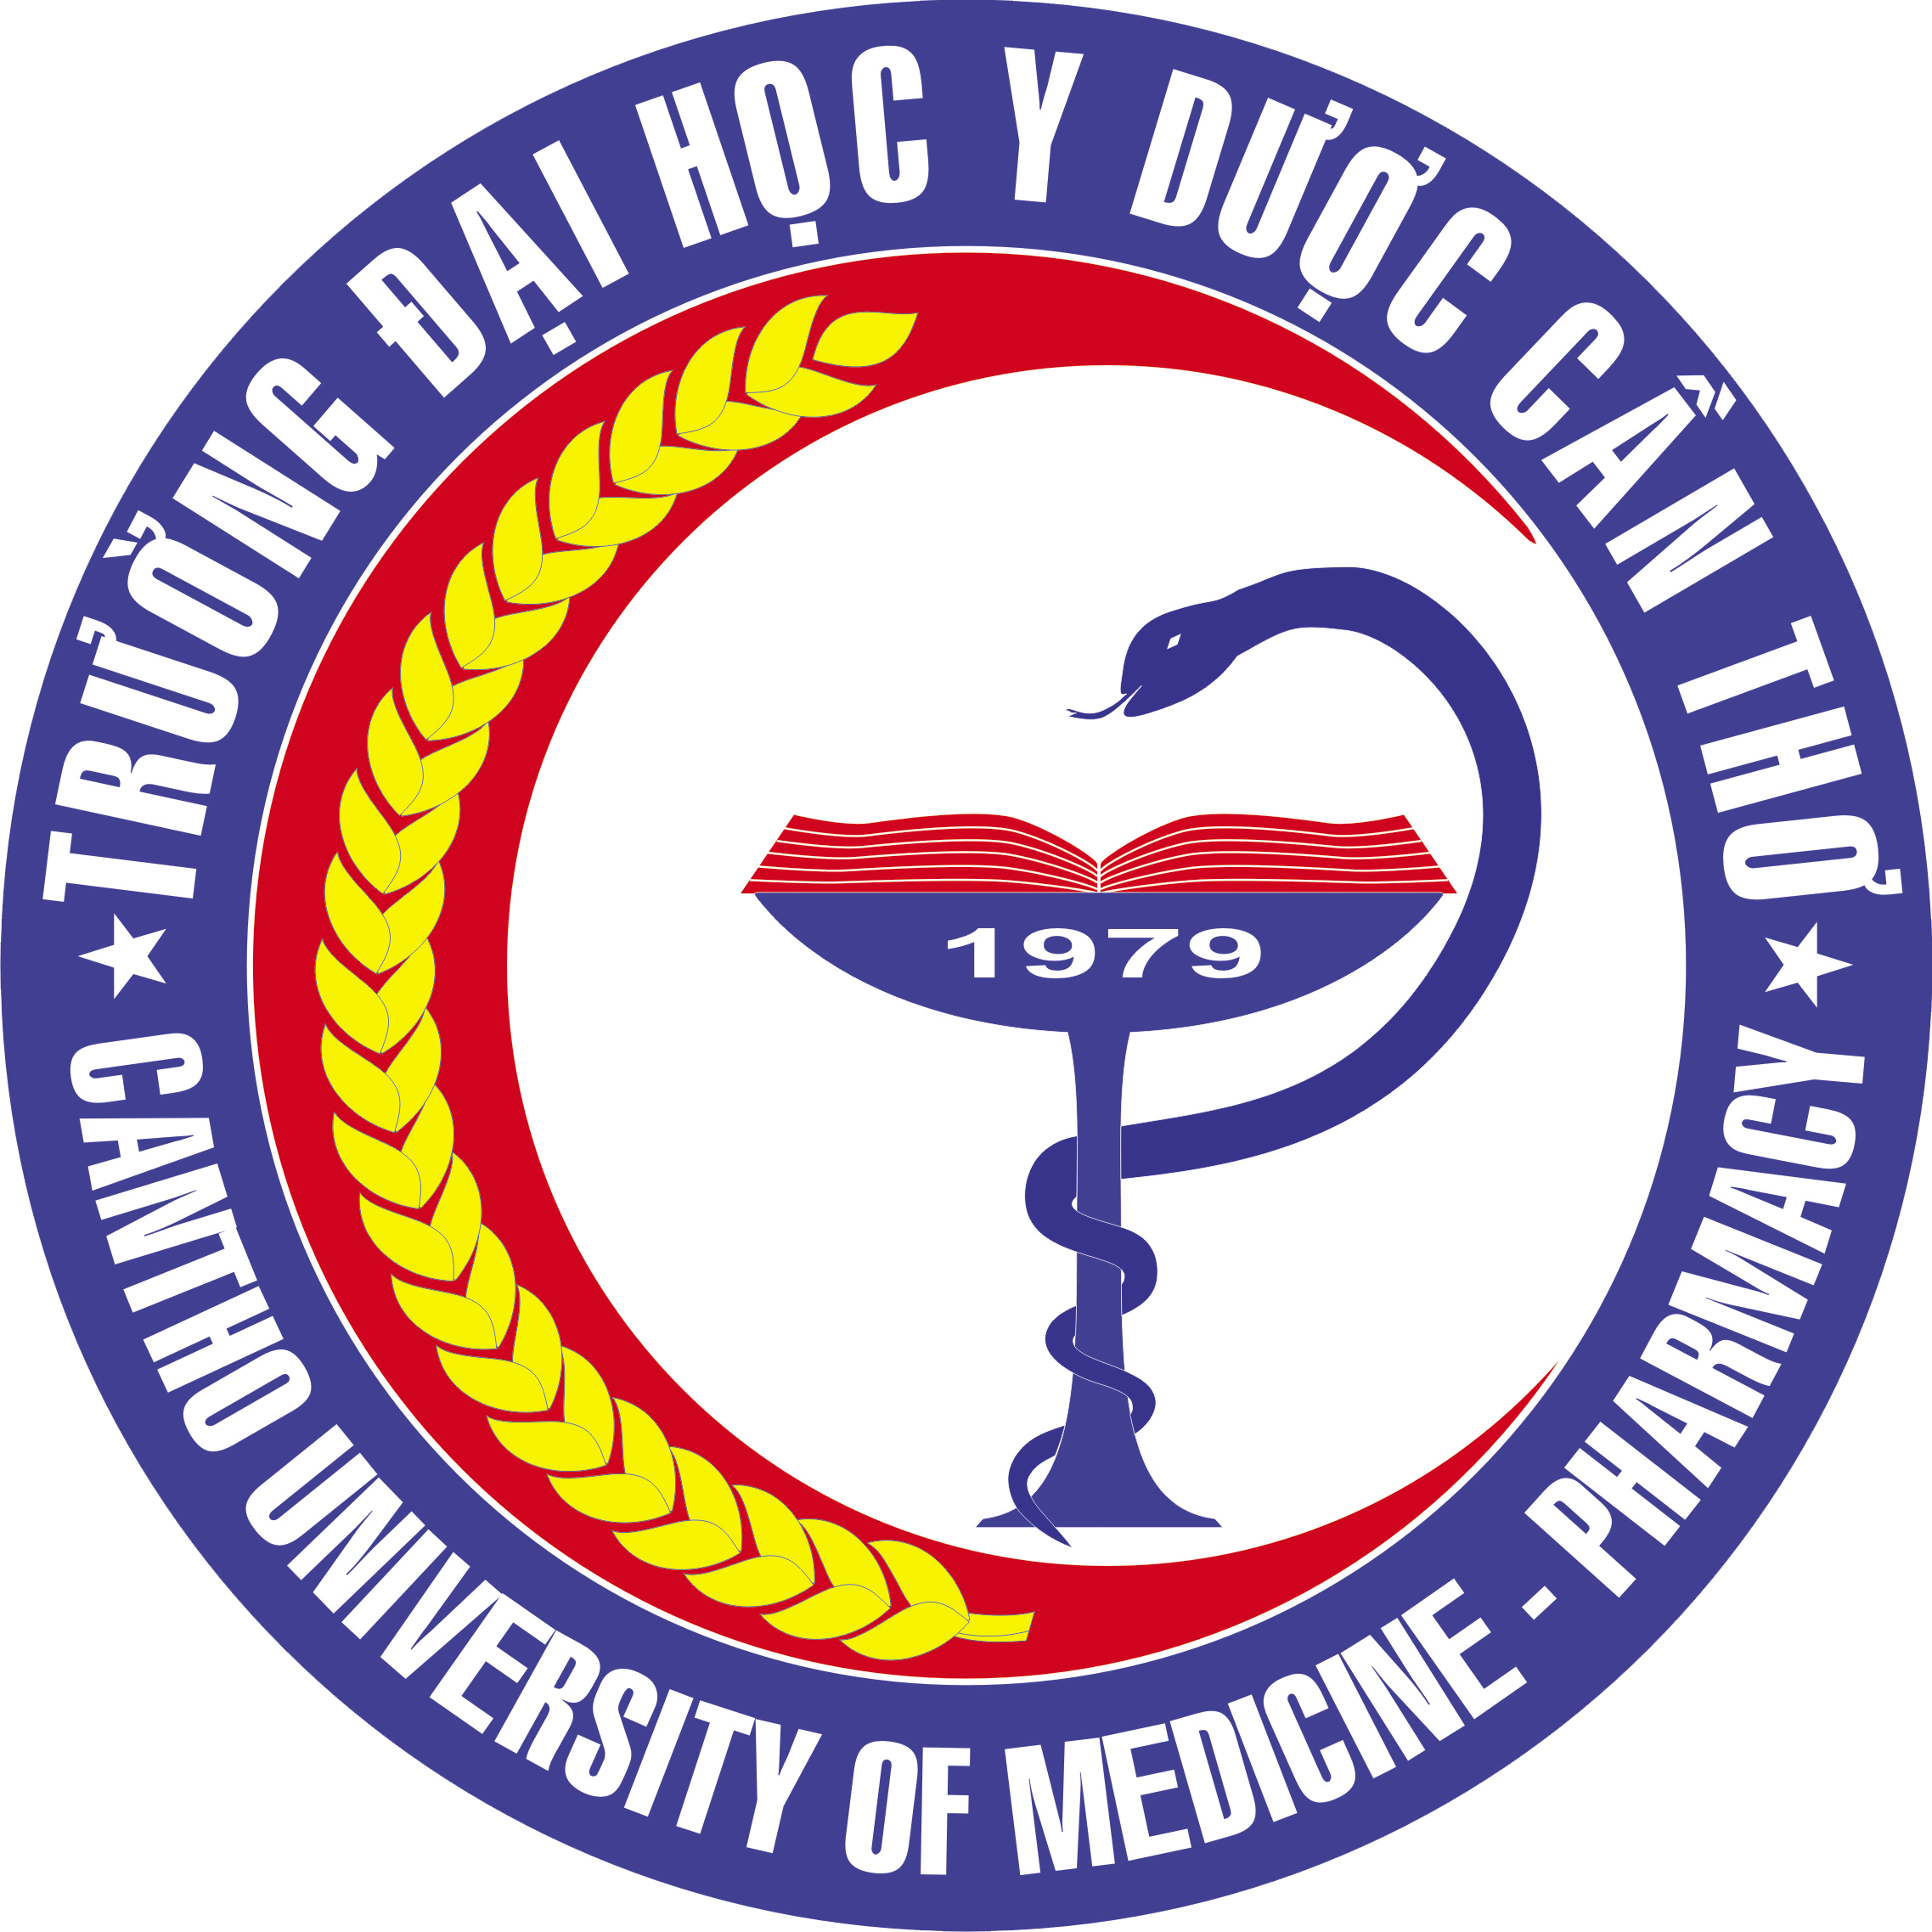 Trường Đại học Y Dược Cần Thơ – Wikipedia tiếng Việt